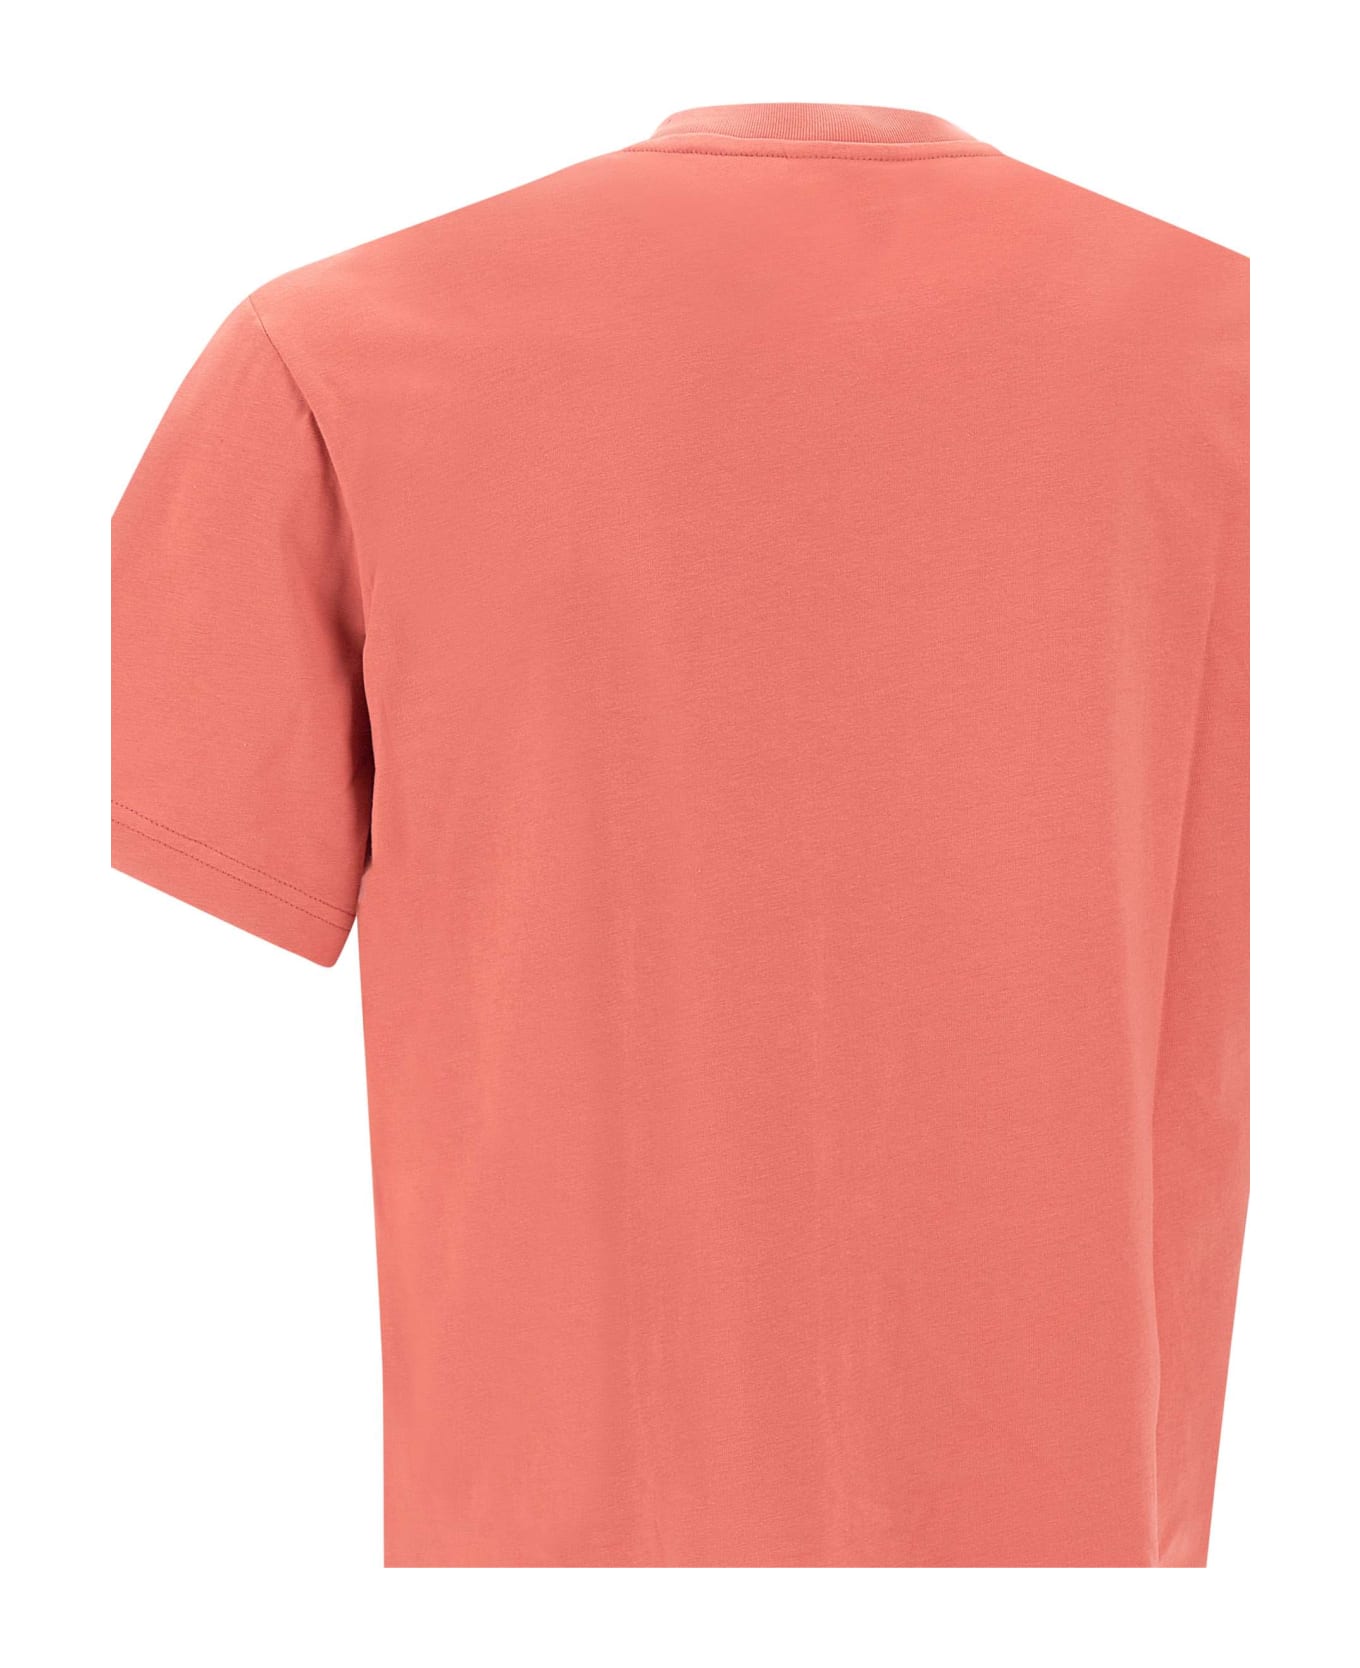 Lacoste Cotton T-shirt - ORANGE